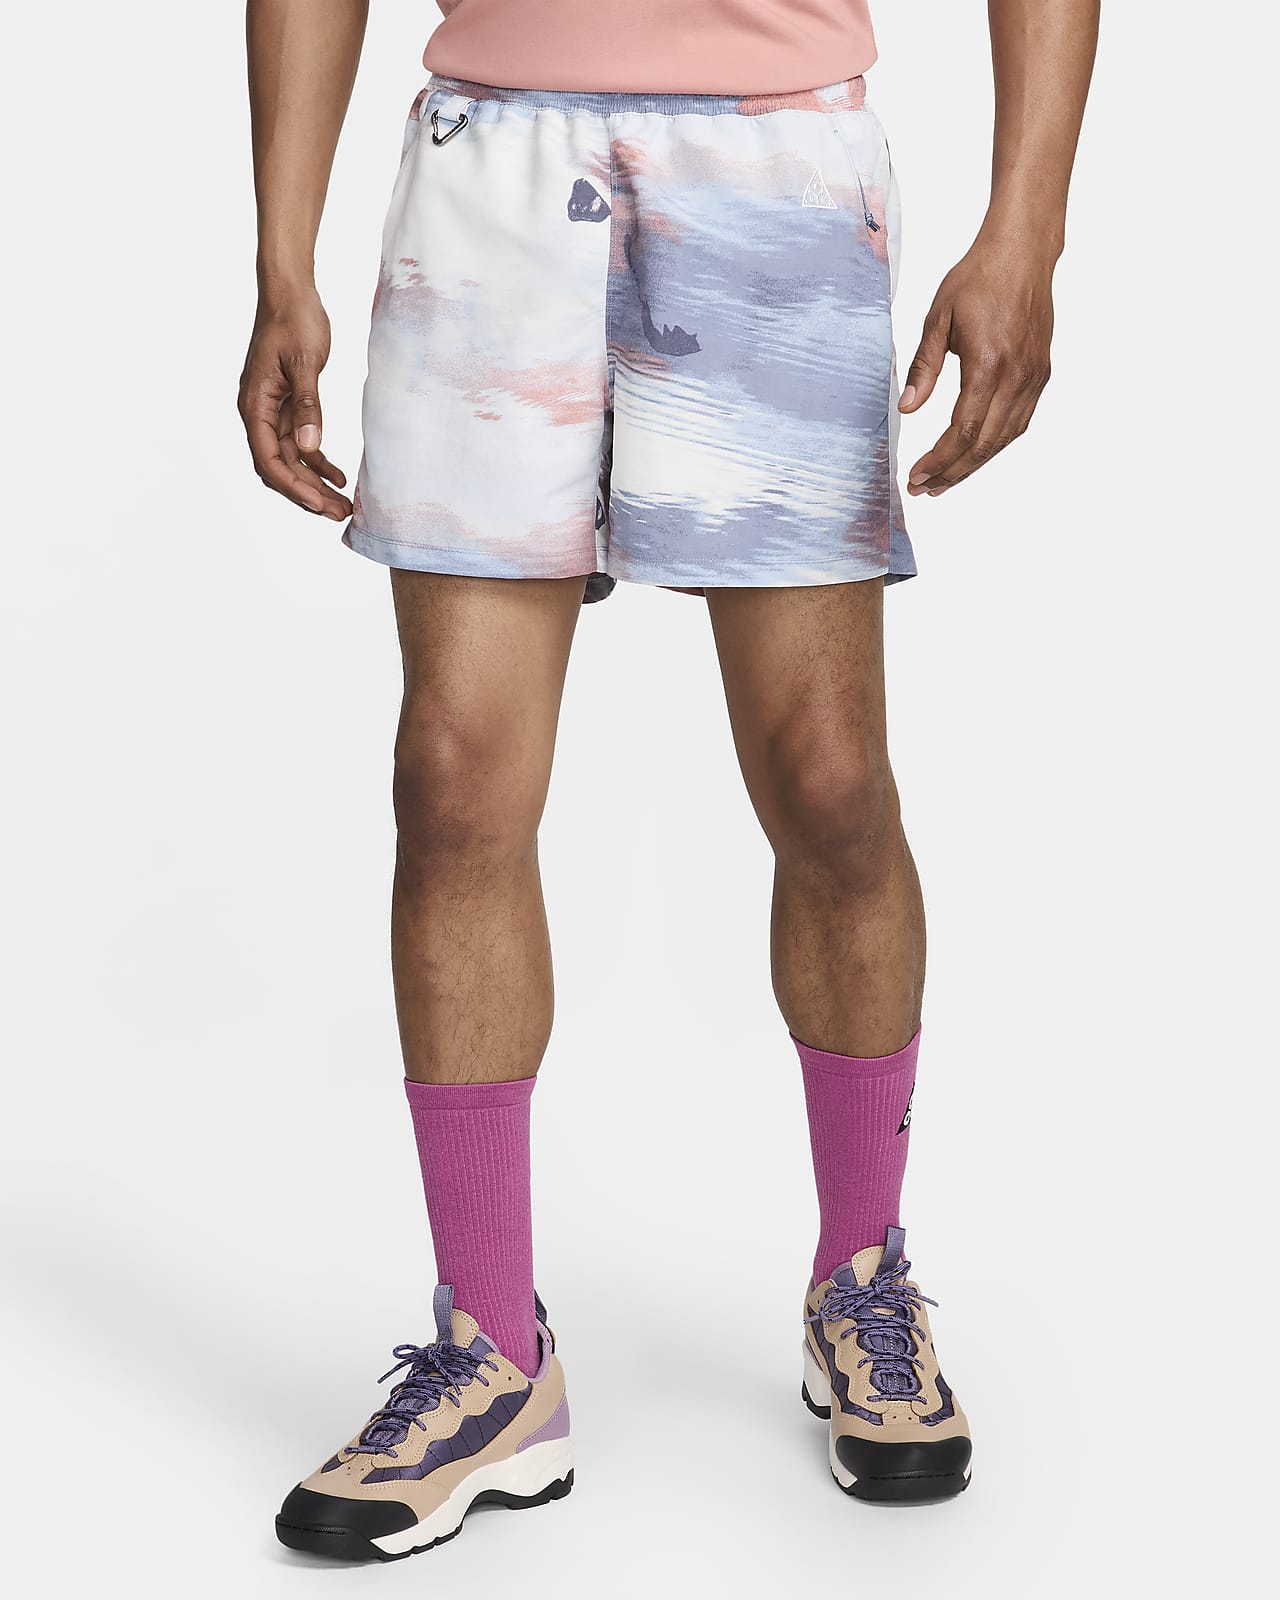 Nike ACG "Reservoir Goat" Men's Allover Print Shorts